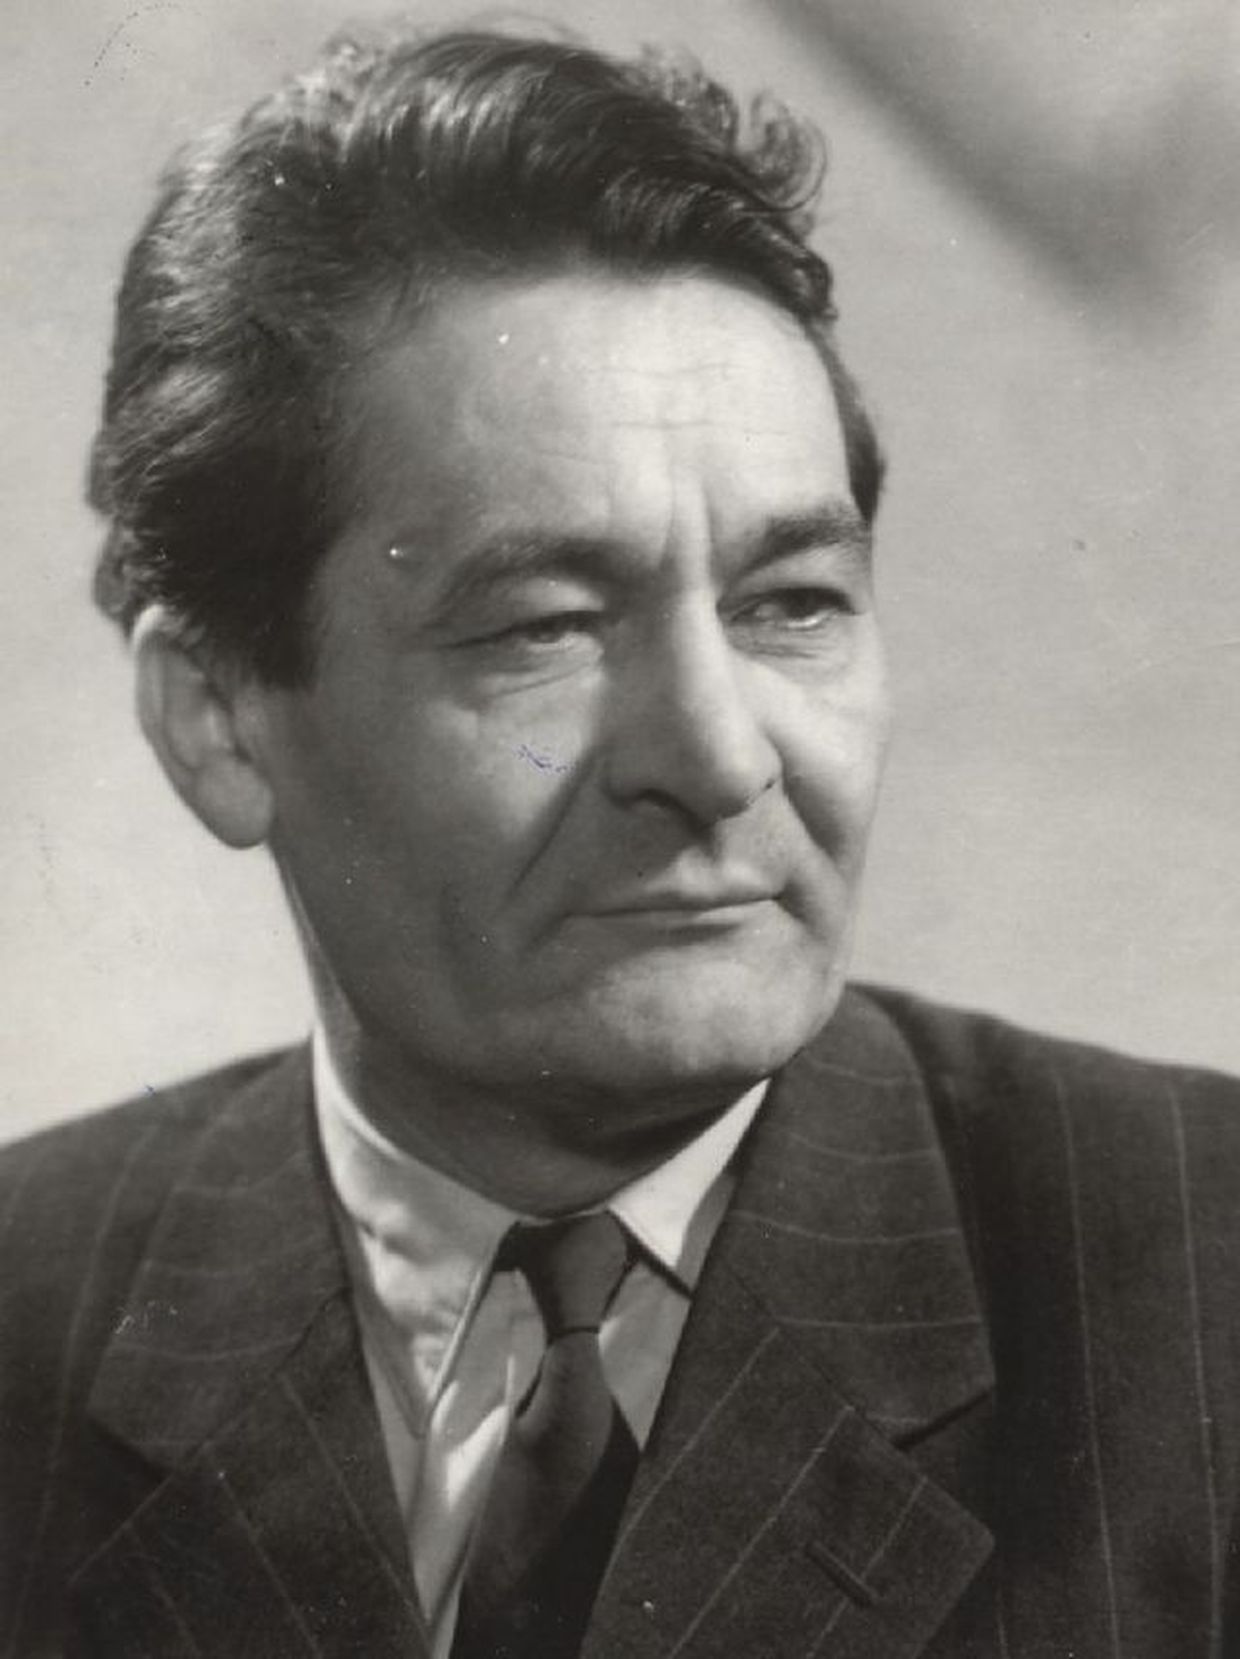 Erdei Ferenc szociológus, politikus, agrár-közgazdász, író